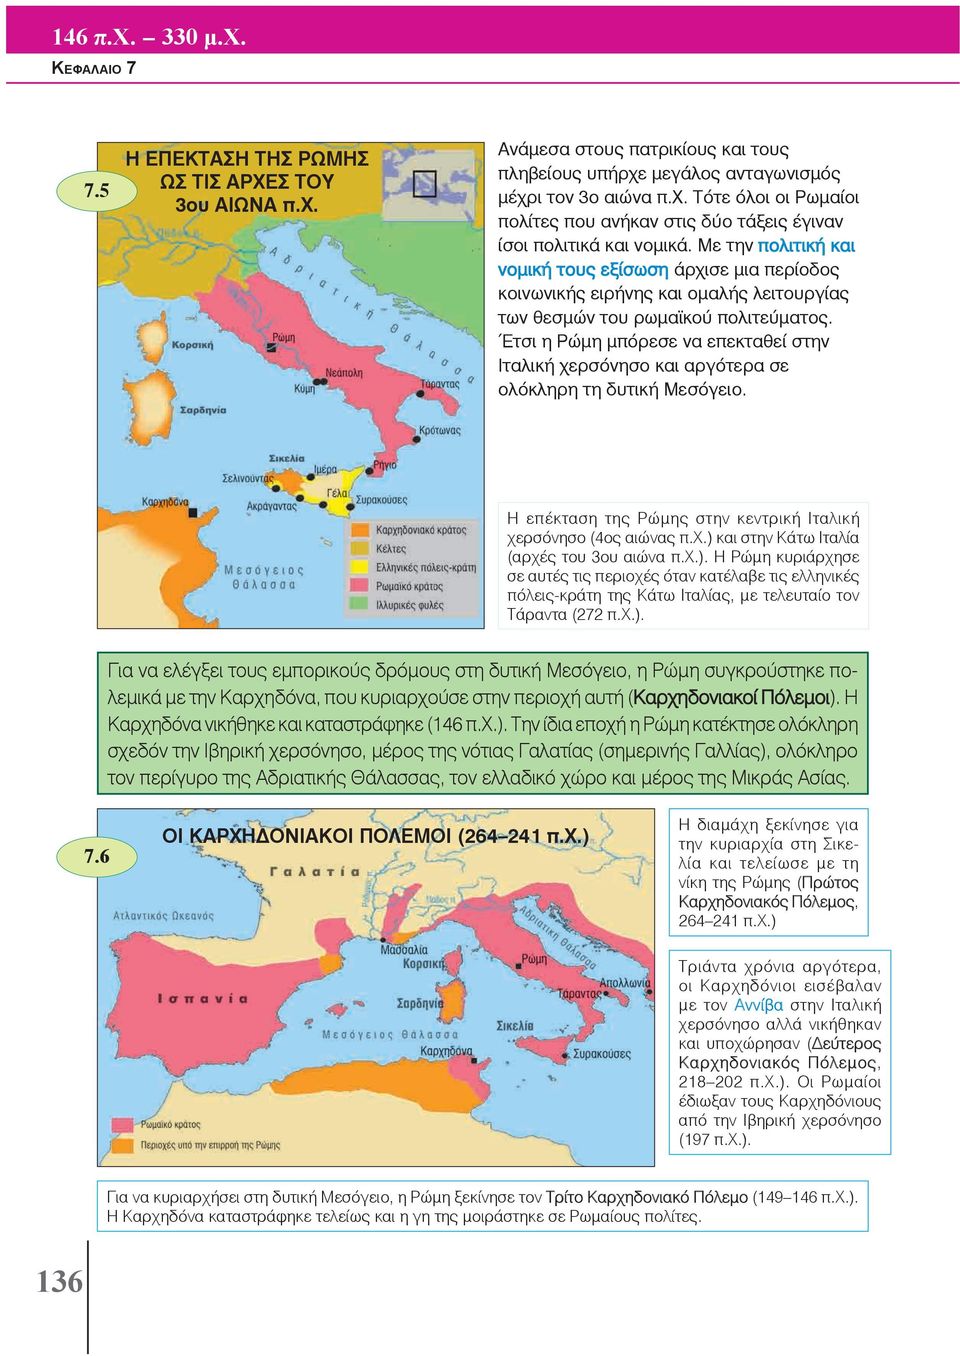 Έτσι η Ρώμη μπόρεσε να επεκταθεί στην Ιταλική χερσόνησο και αργότερα σε ολόκληρη τη δυτική Μεσόγειο. Η επέκταση της Ρώμης στην κεντρική Ιταλική χερσόνησο (4ος αιώνας π.χ.) και στην Κάτω Ιταλία (αρχές του 3ου αιώνα π.